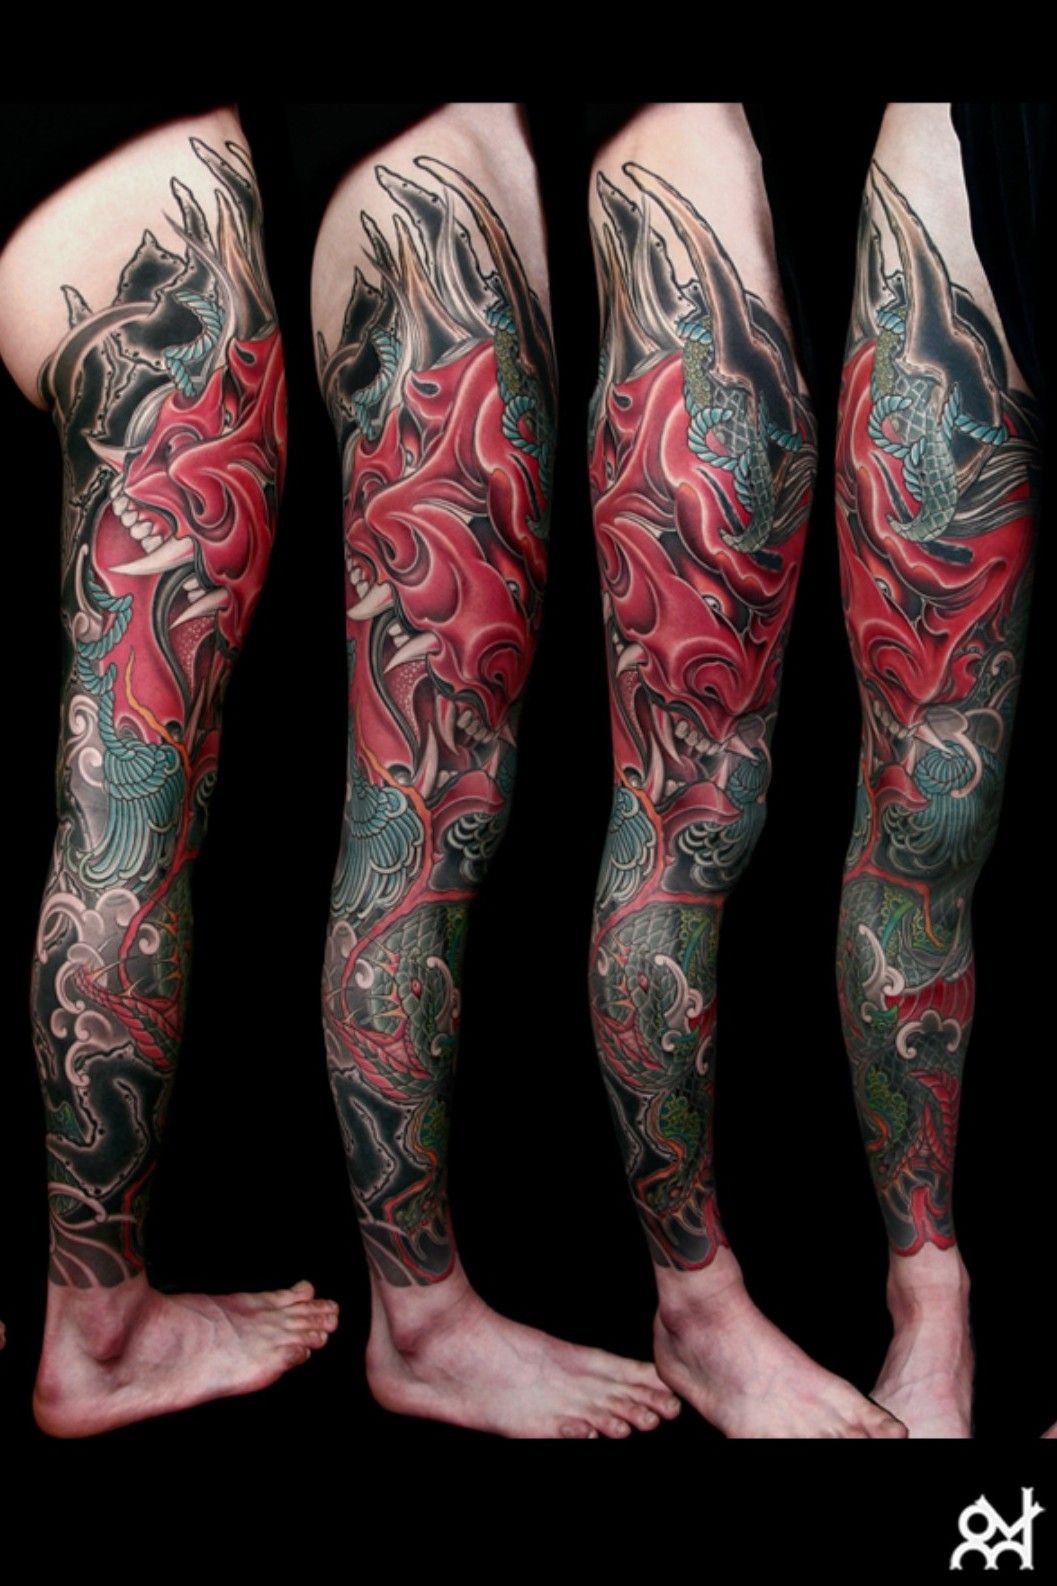 1 in the collection💰 #tattoo #tattoos #tattooed #tattooartist #tattooart  #miamitattoos #legtattoo #legsleeve #legsleevetattoo